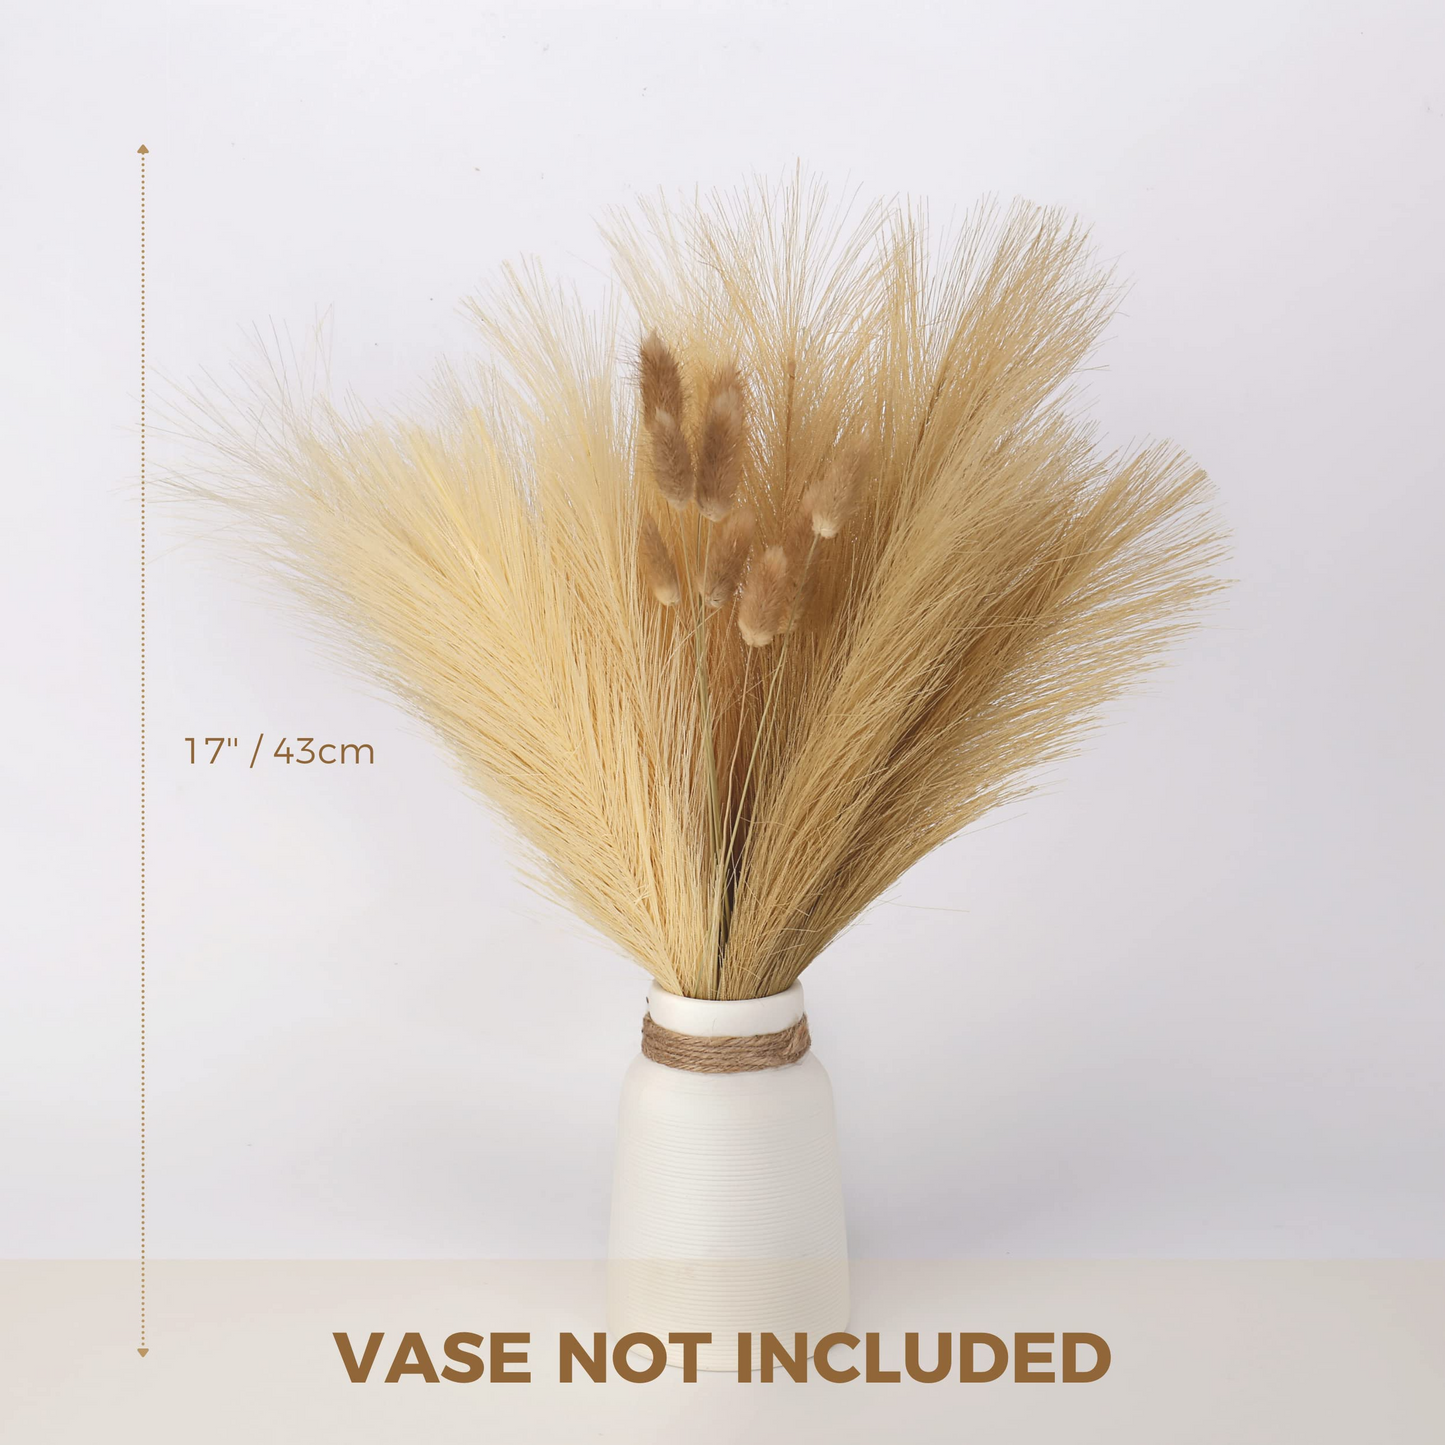 Vase Accent Faux Pampas Grass, 17'', 6 Pcs Faux Pampas Grass & 10 Pcs Bunny Tails